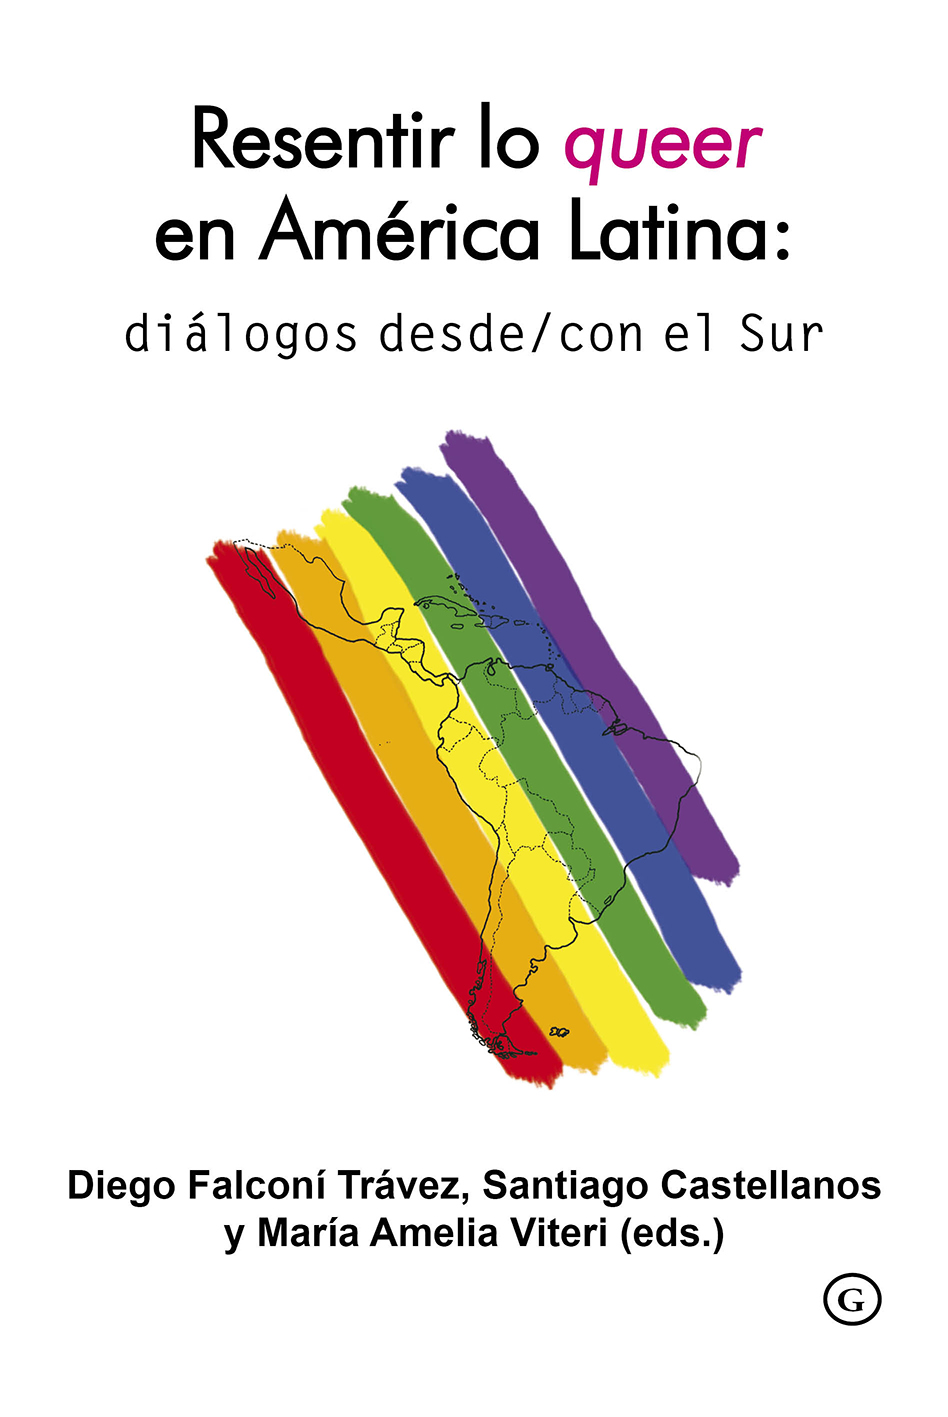 Resentir lo queer en América Latina: diálogos desde/con el Sur 